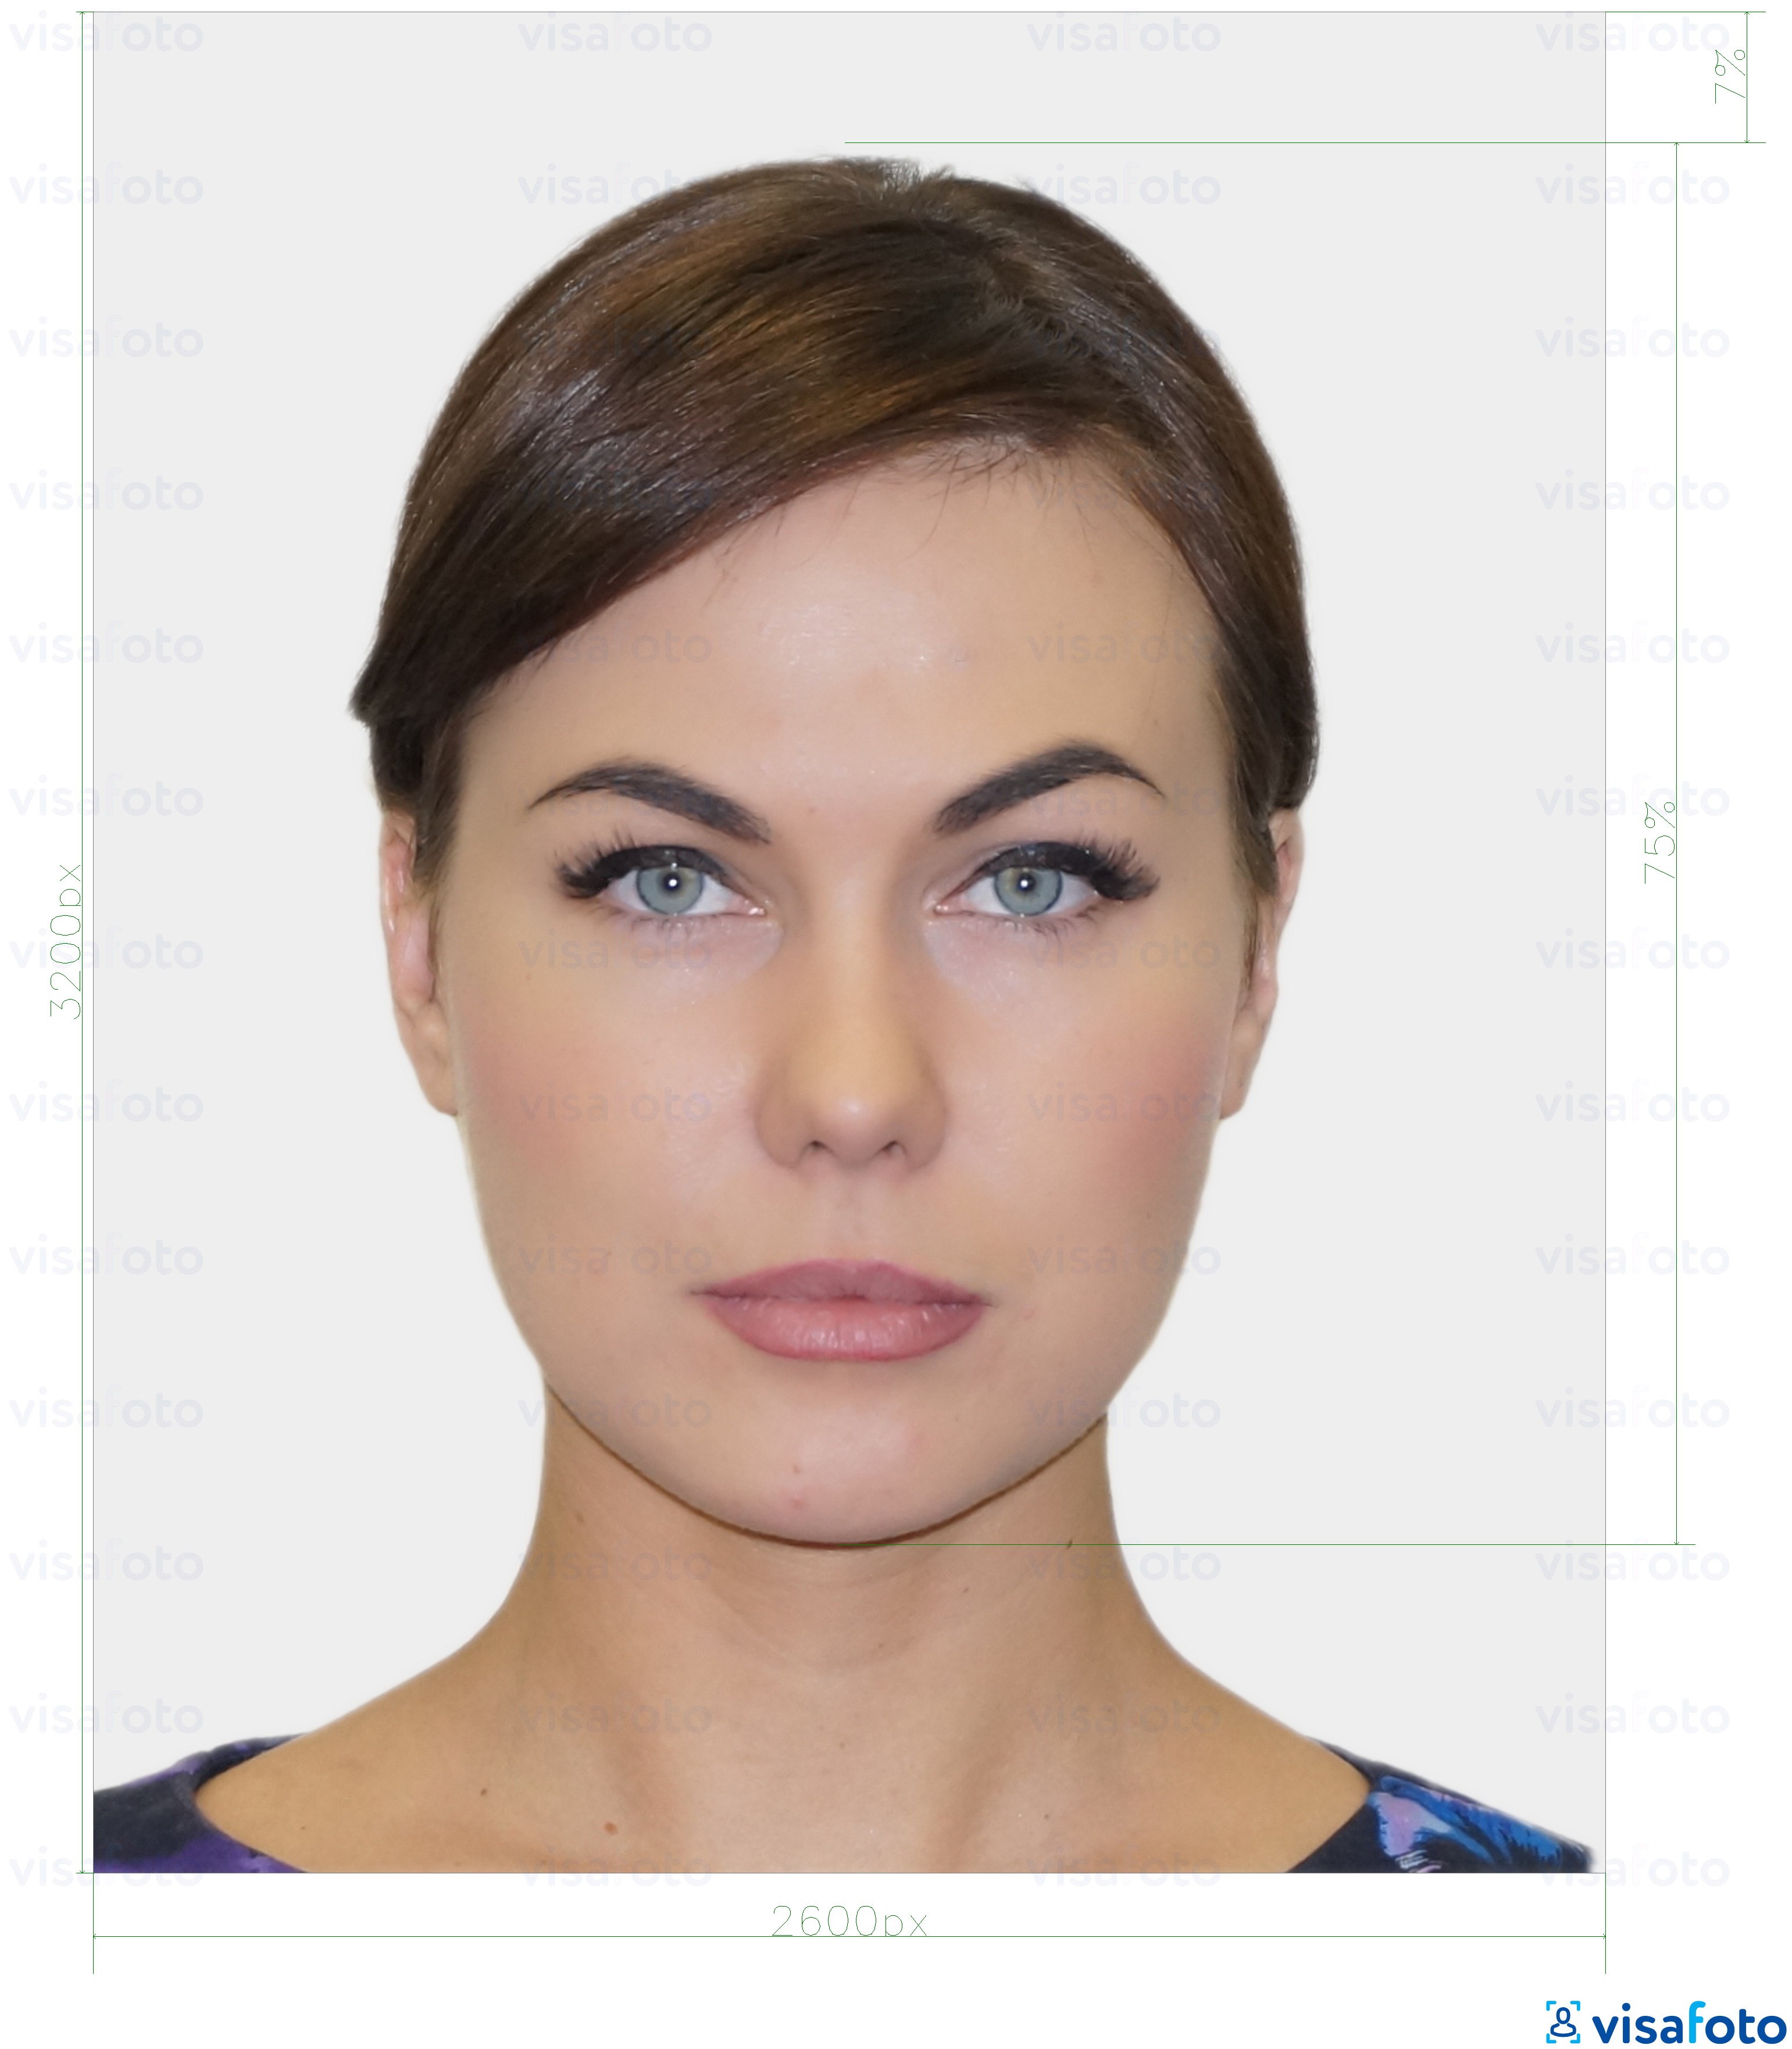 Exemplo de foto para Cartão de identidade digital residente da Estónia 1300x1600 píxeis com especificação exata de dimensão